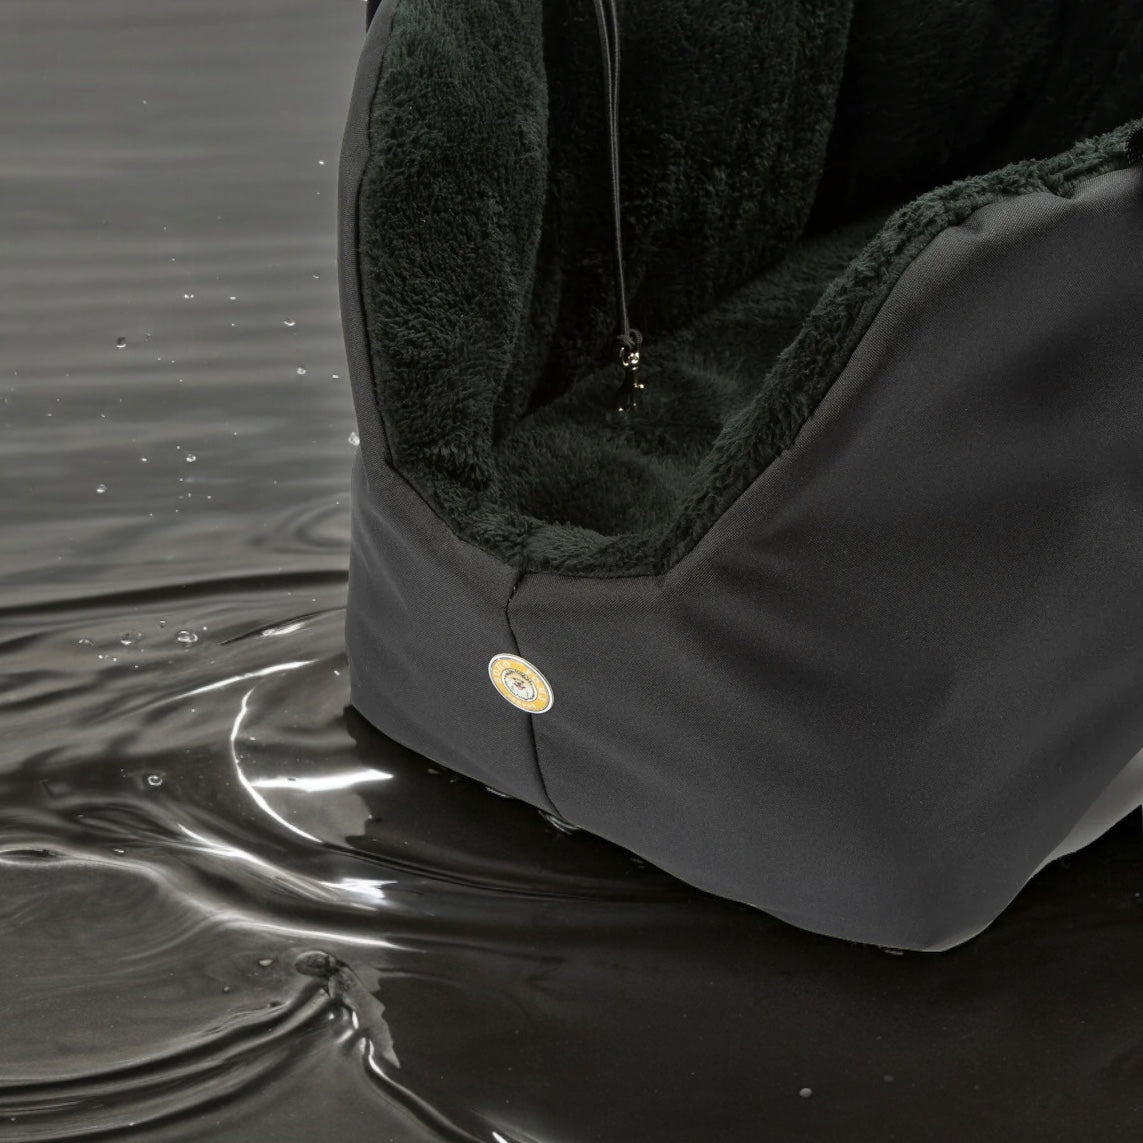 Suzy's Fashion Rainy Bear Sac de transport pour chien noir et gris avec fermeture éclair